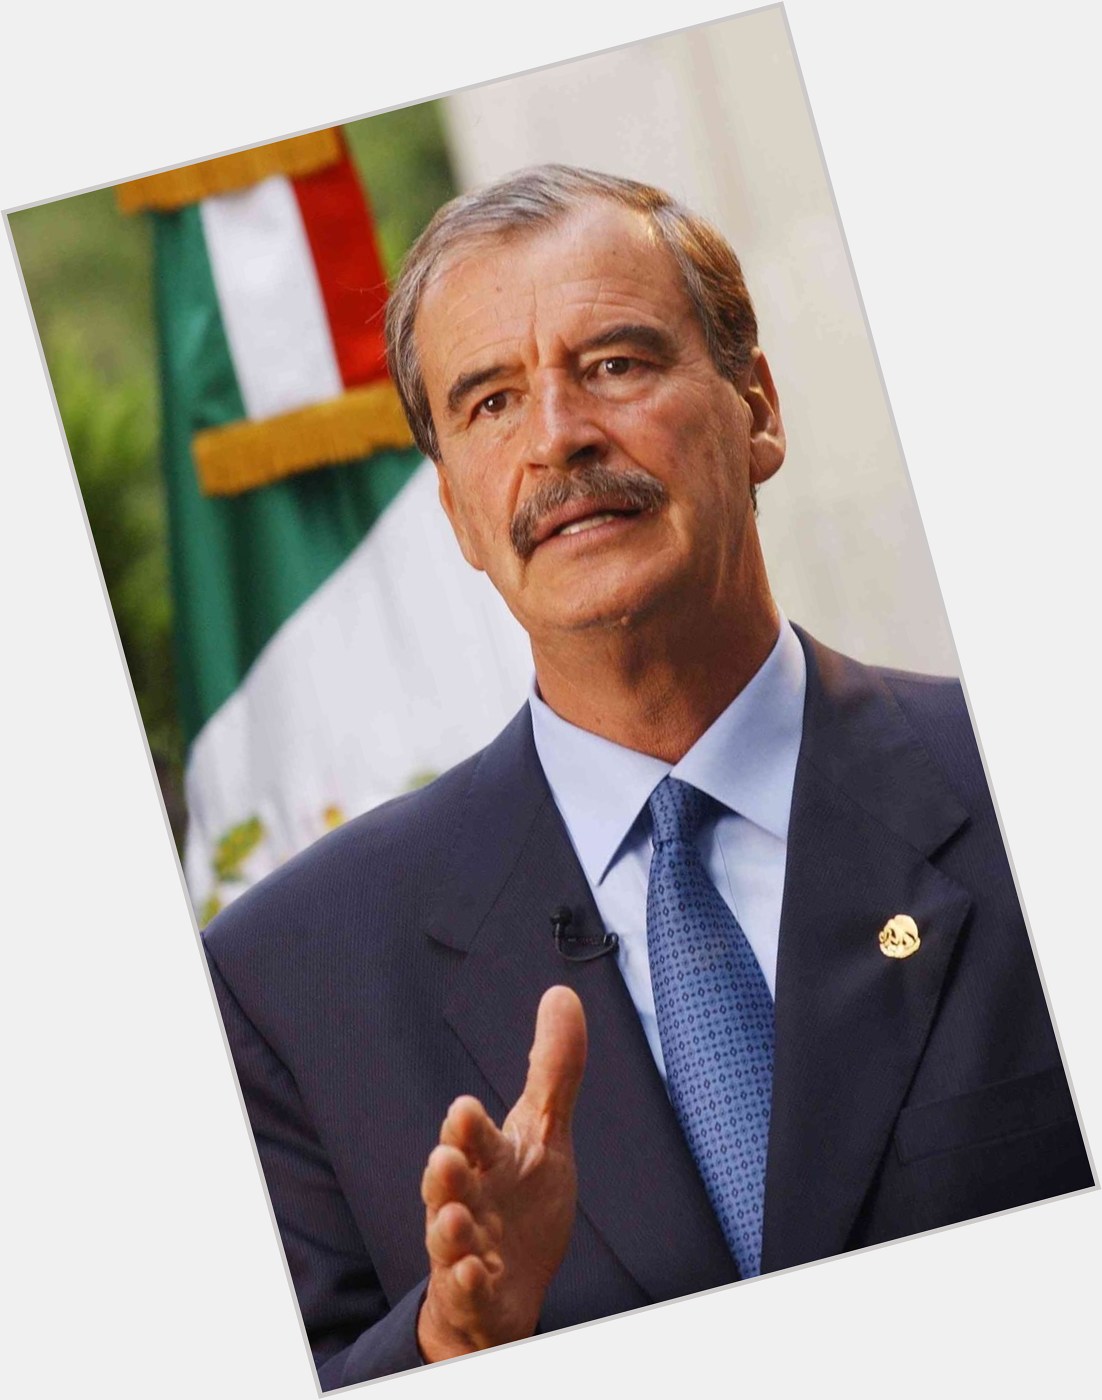 Vicente Fox new pic 1